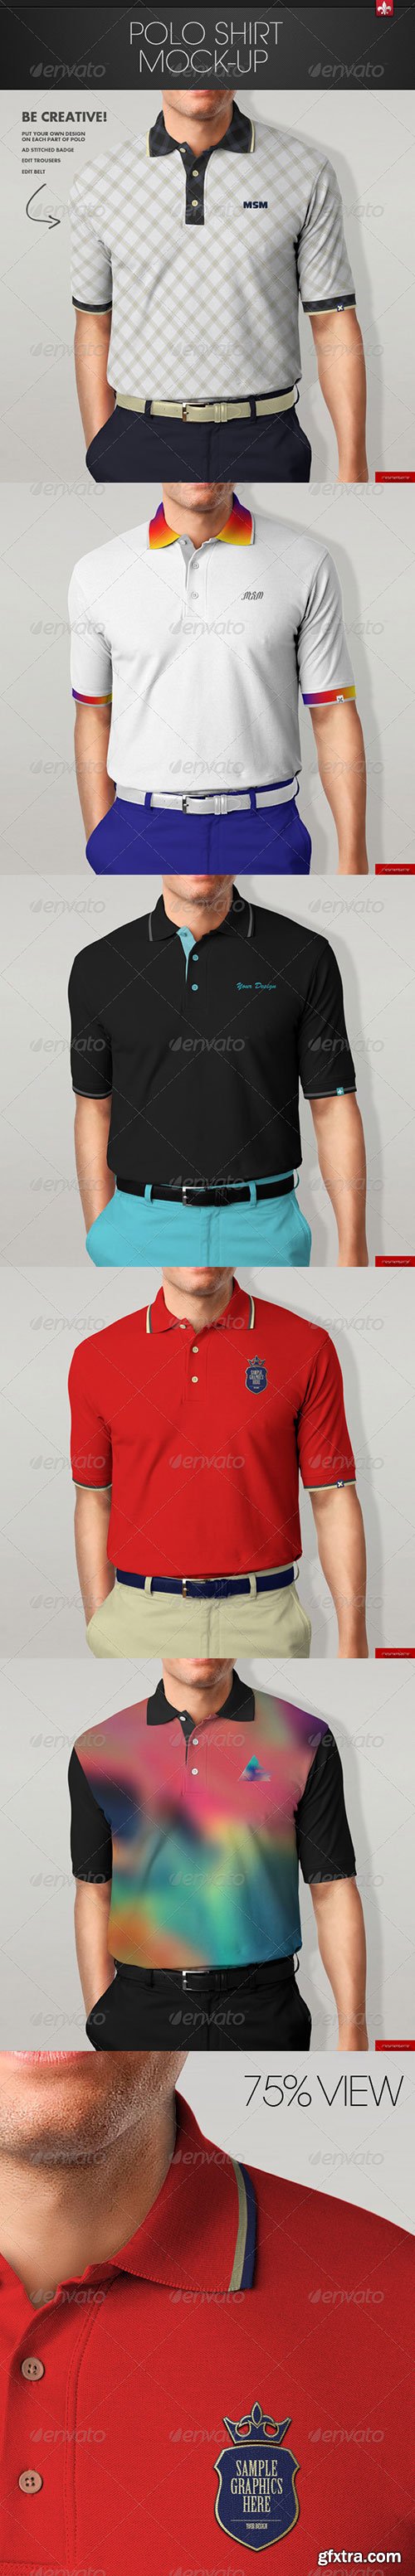 GraphicRiver - Polo Shirt Mock-up 7245899